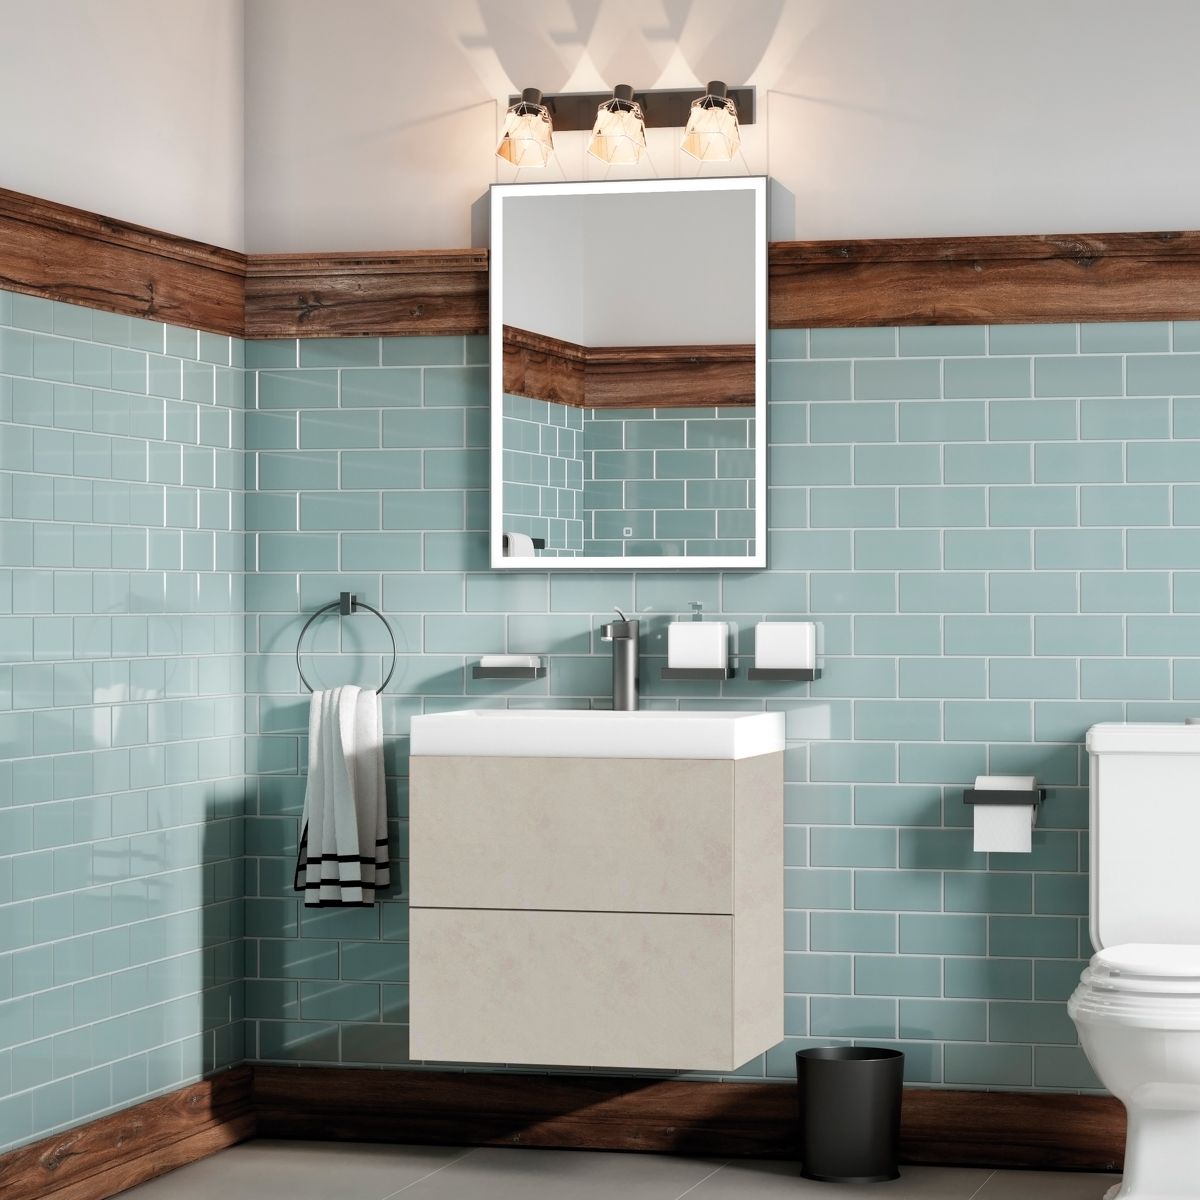 Мебель для ванной комнаты подвесная Art&Max VERONA-PUSH 60 см Venetiano